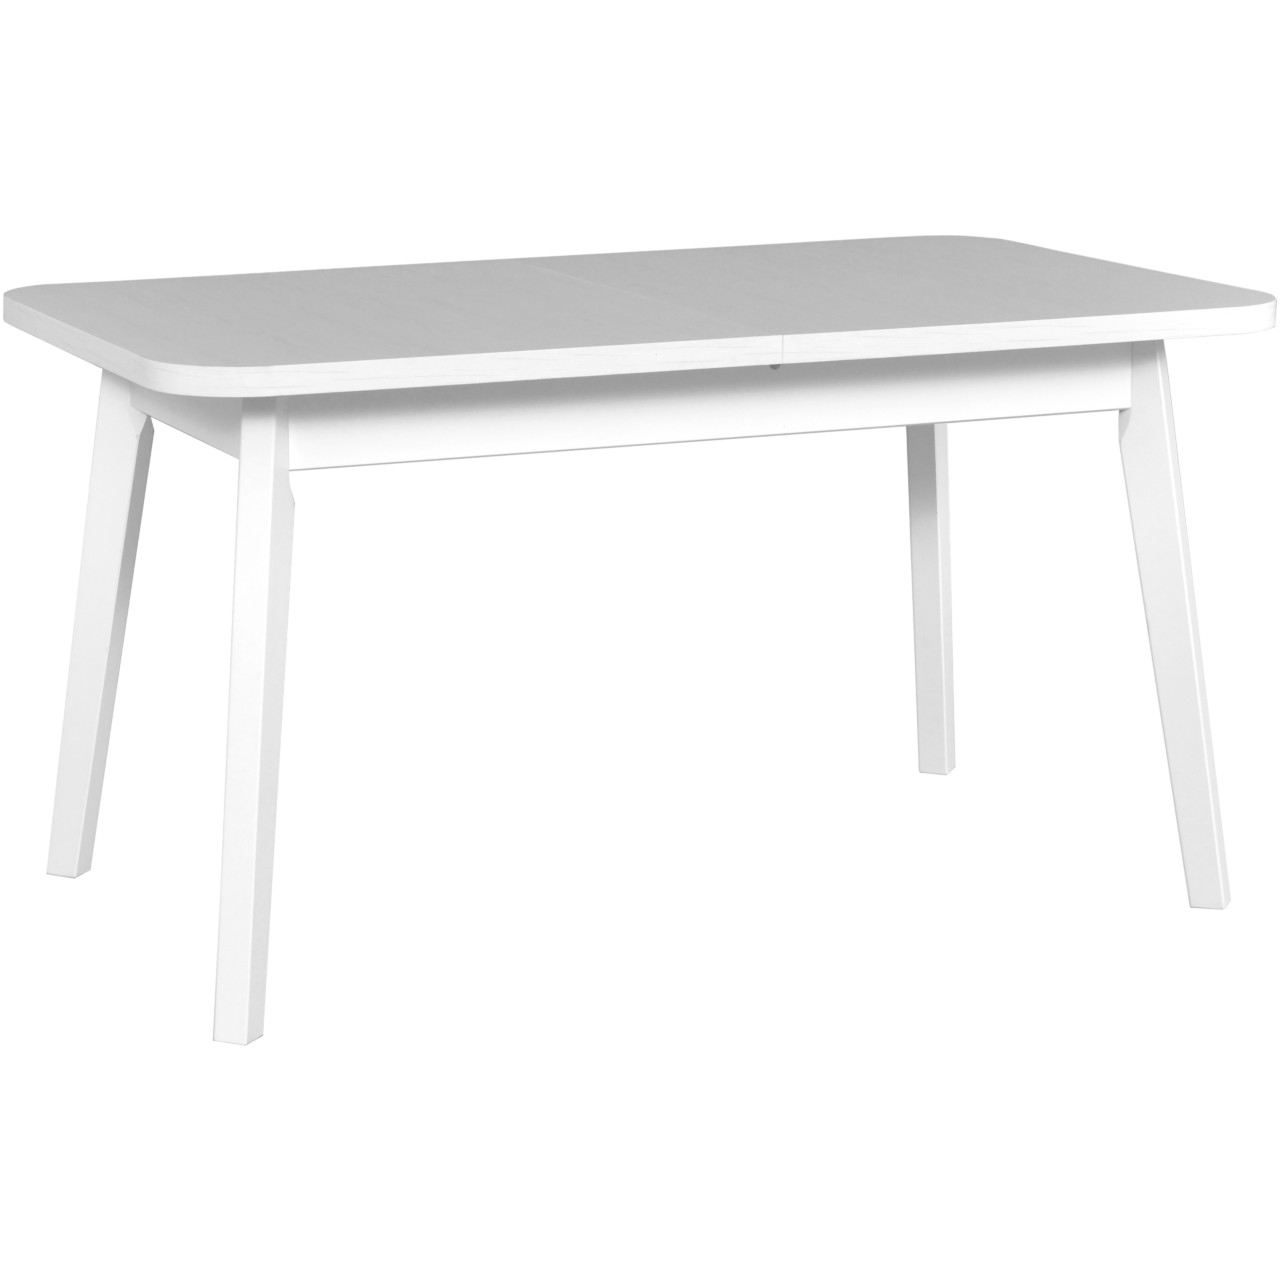 Table OSLO 6 80x140/180 white laminate